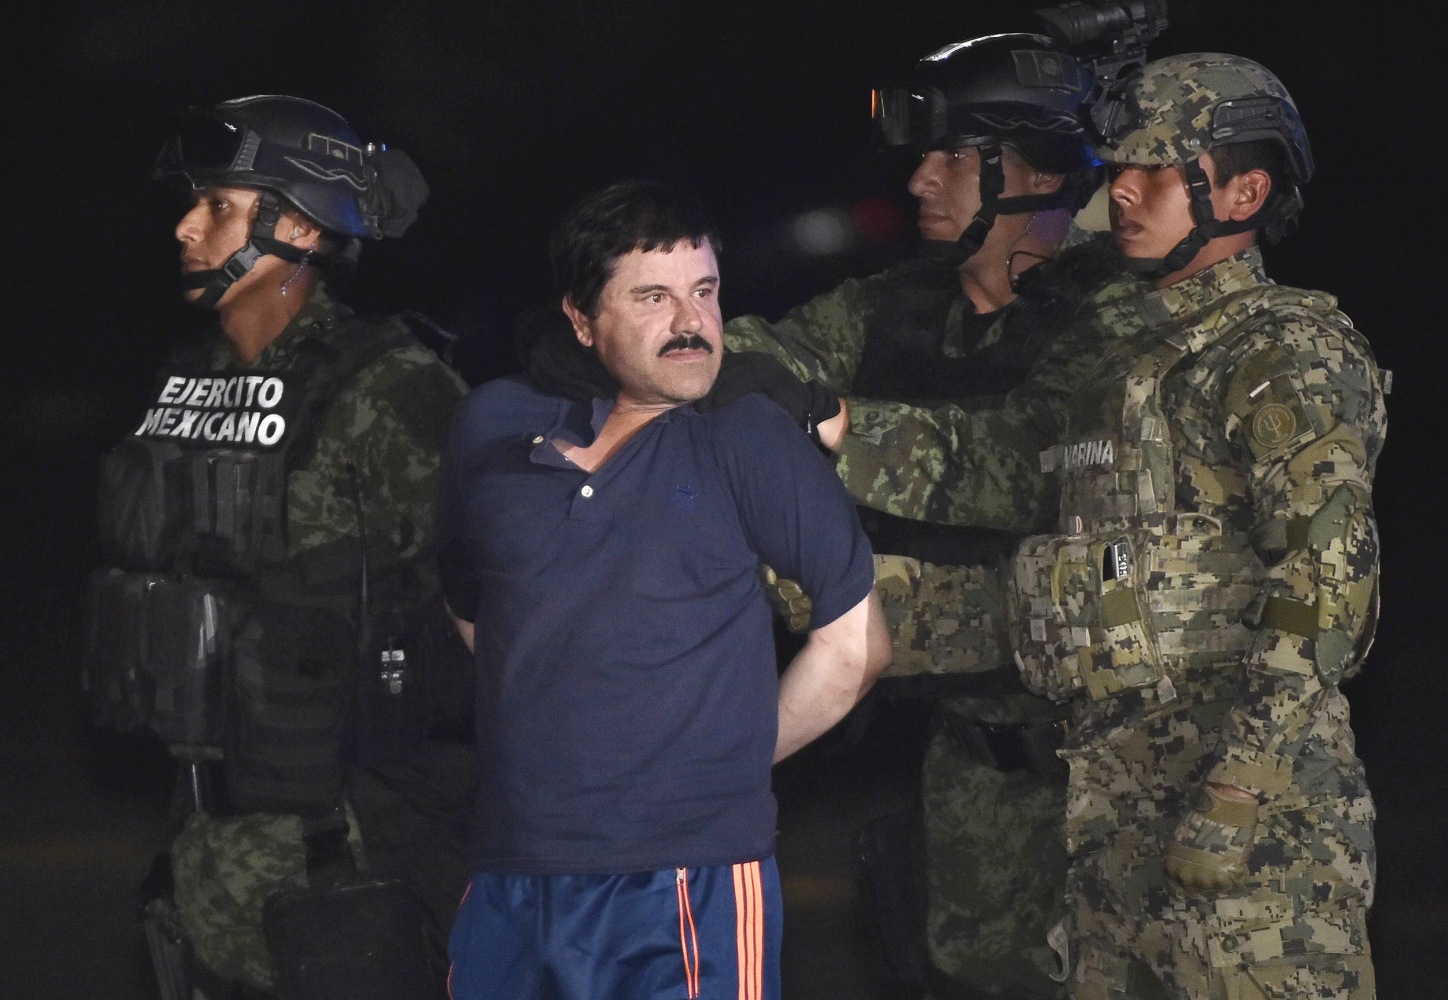 HIJO DE PUTA! - El Chapo: Mexican Drug Kingpin Recaptured